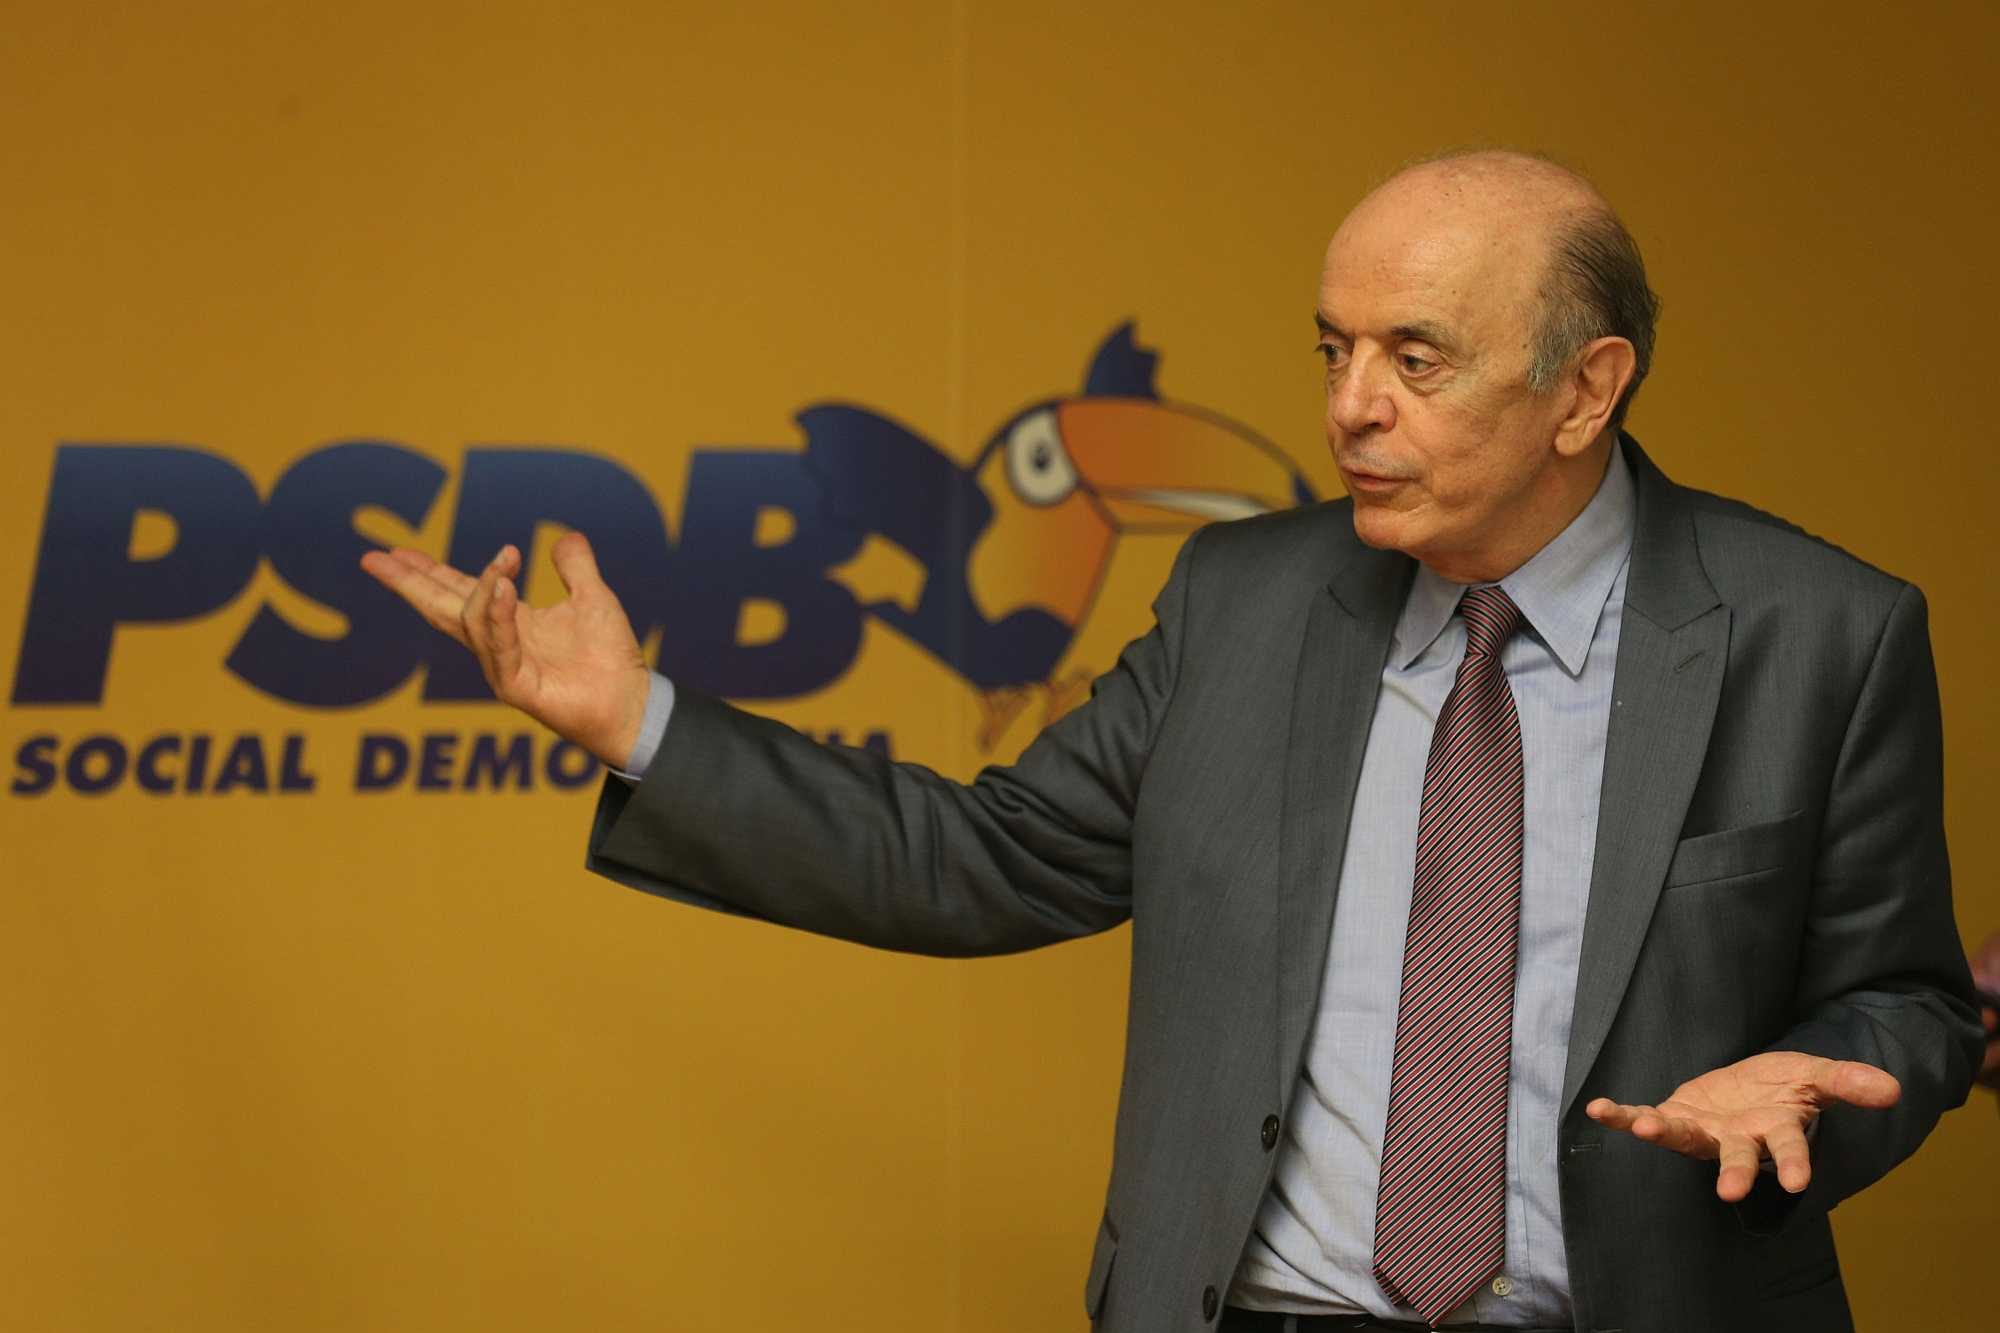 José Serra, a PSDB leader - Fabio Rodrigues Pozzebom